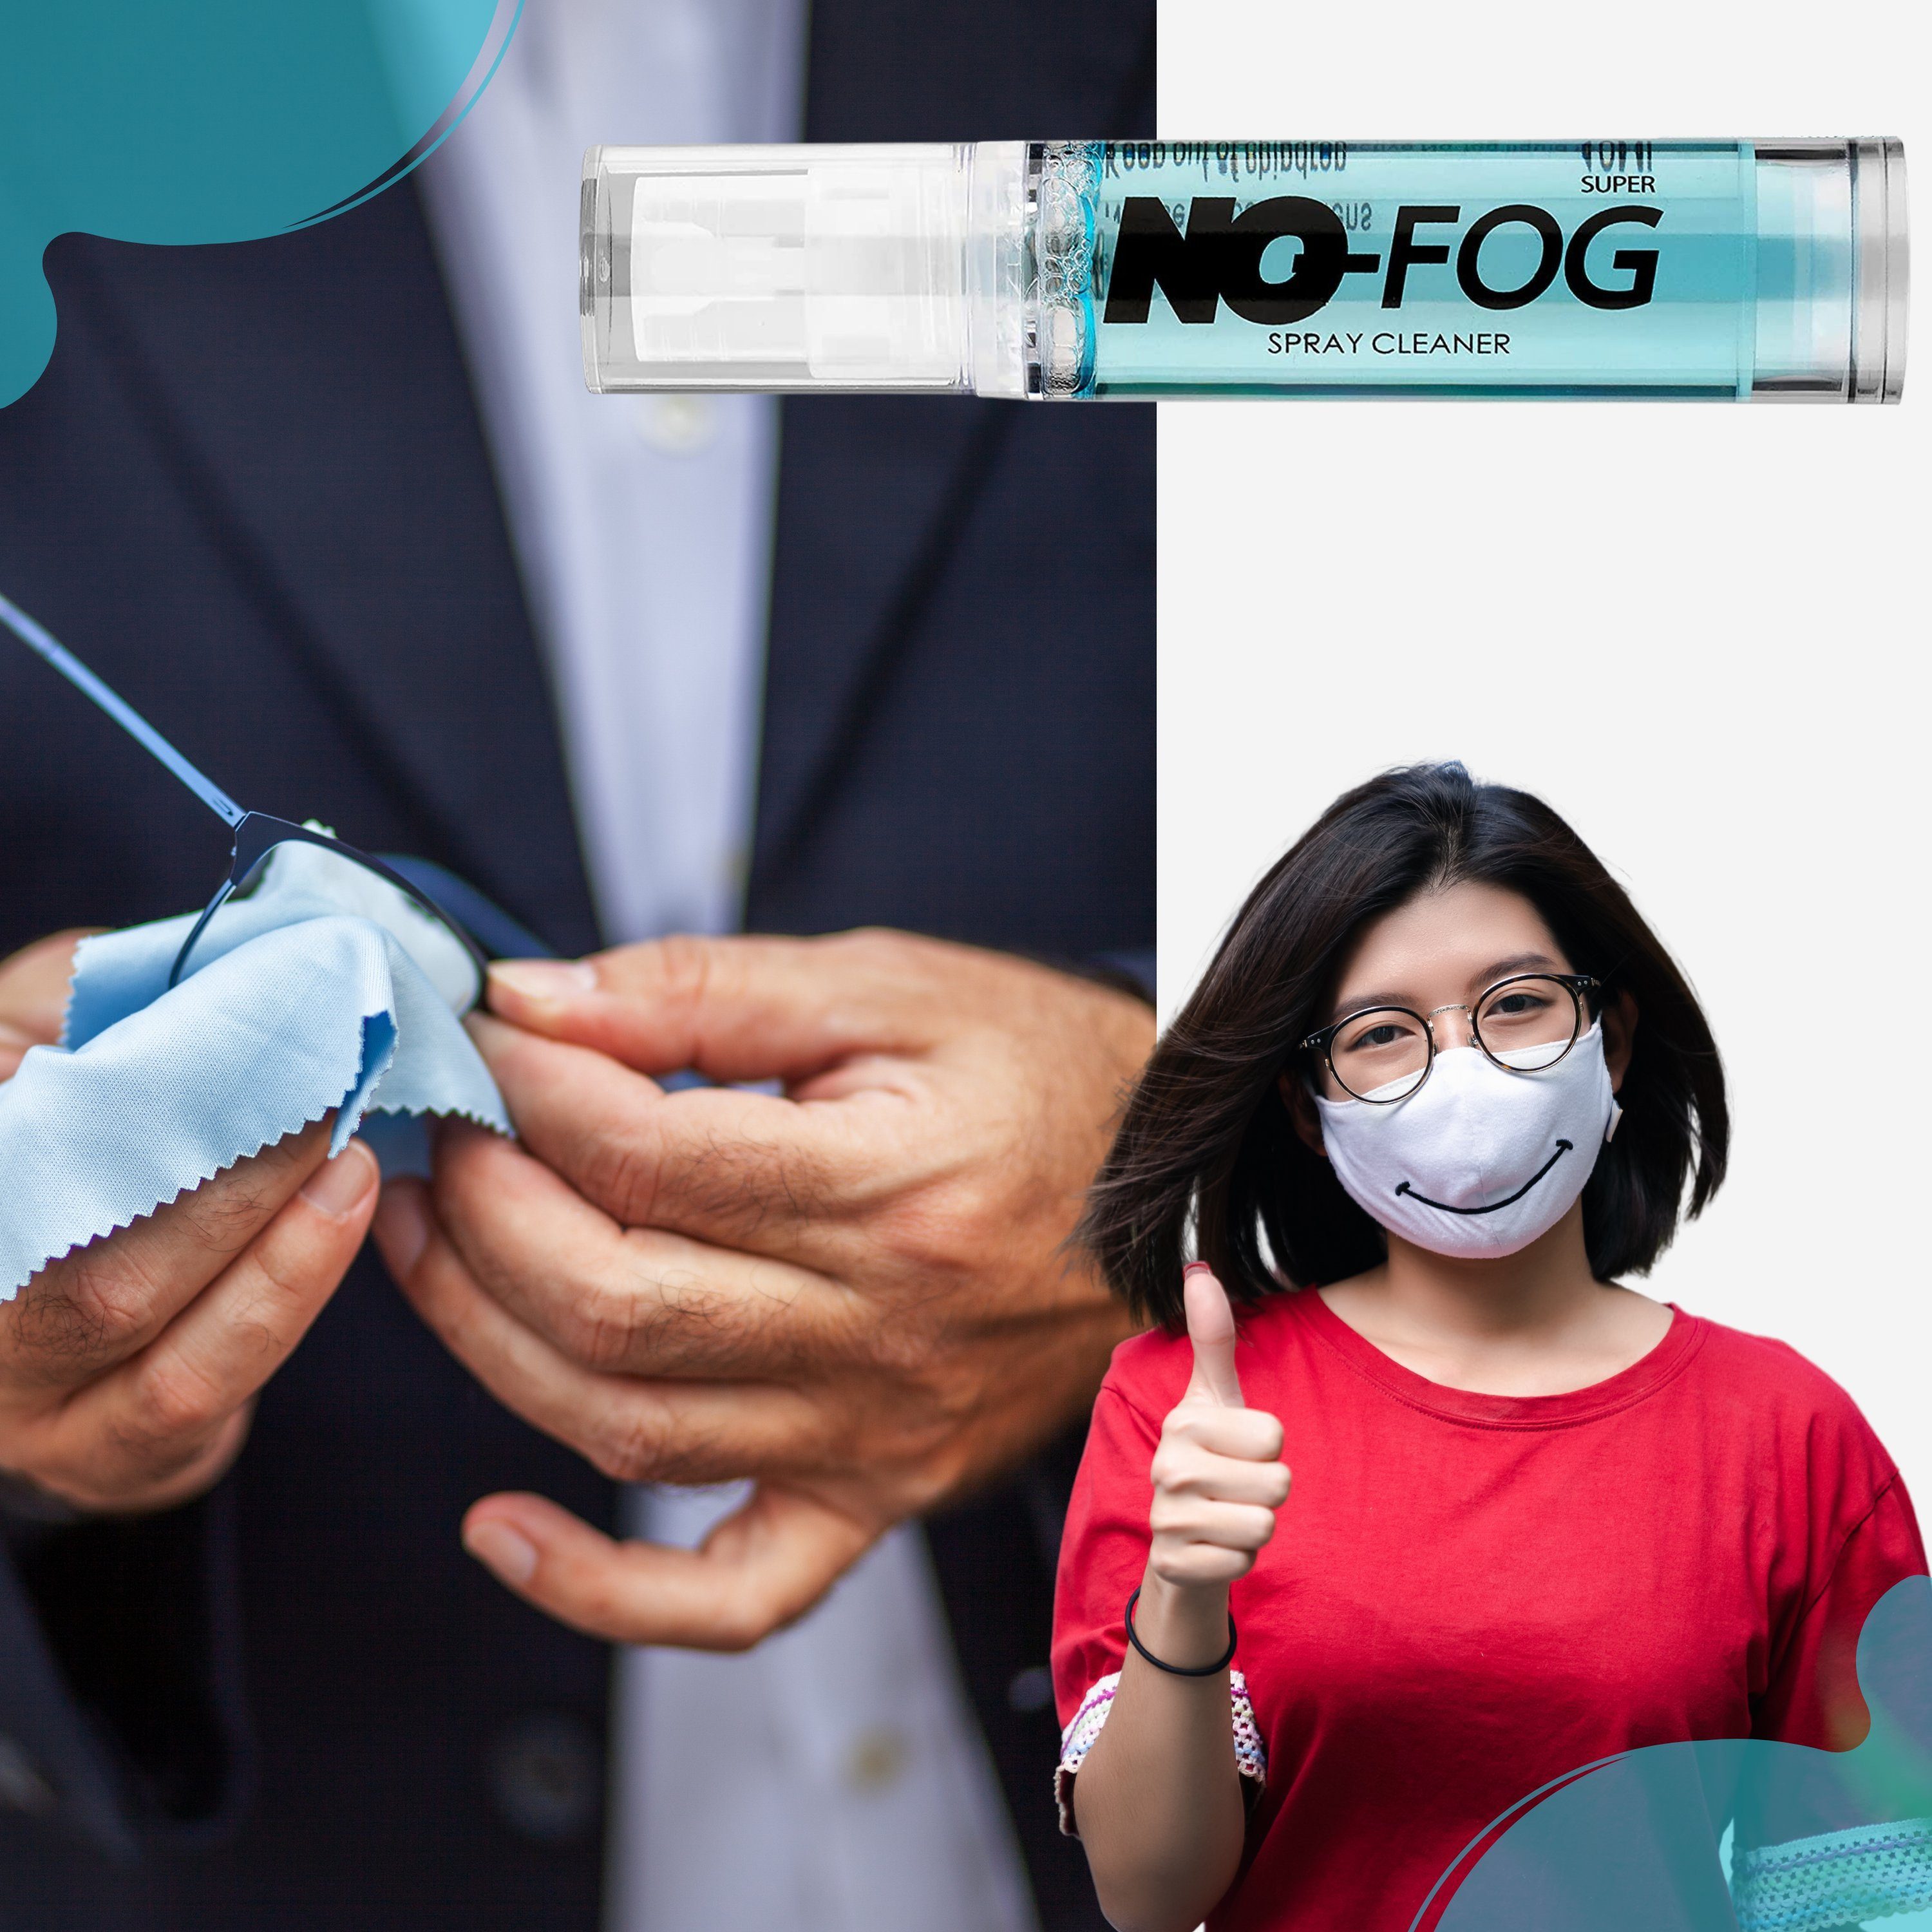 AllBlue products Brille NOFog Antibeschlag Brillen Anti 20ml Brillen Fog für Spray, Putzspray